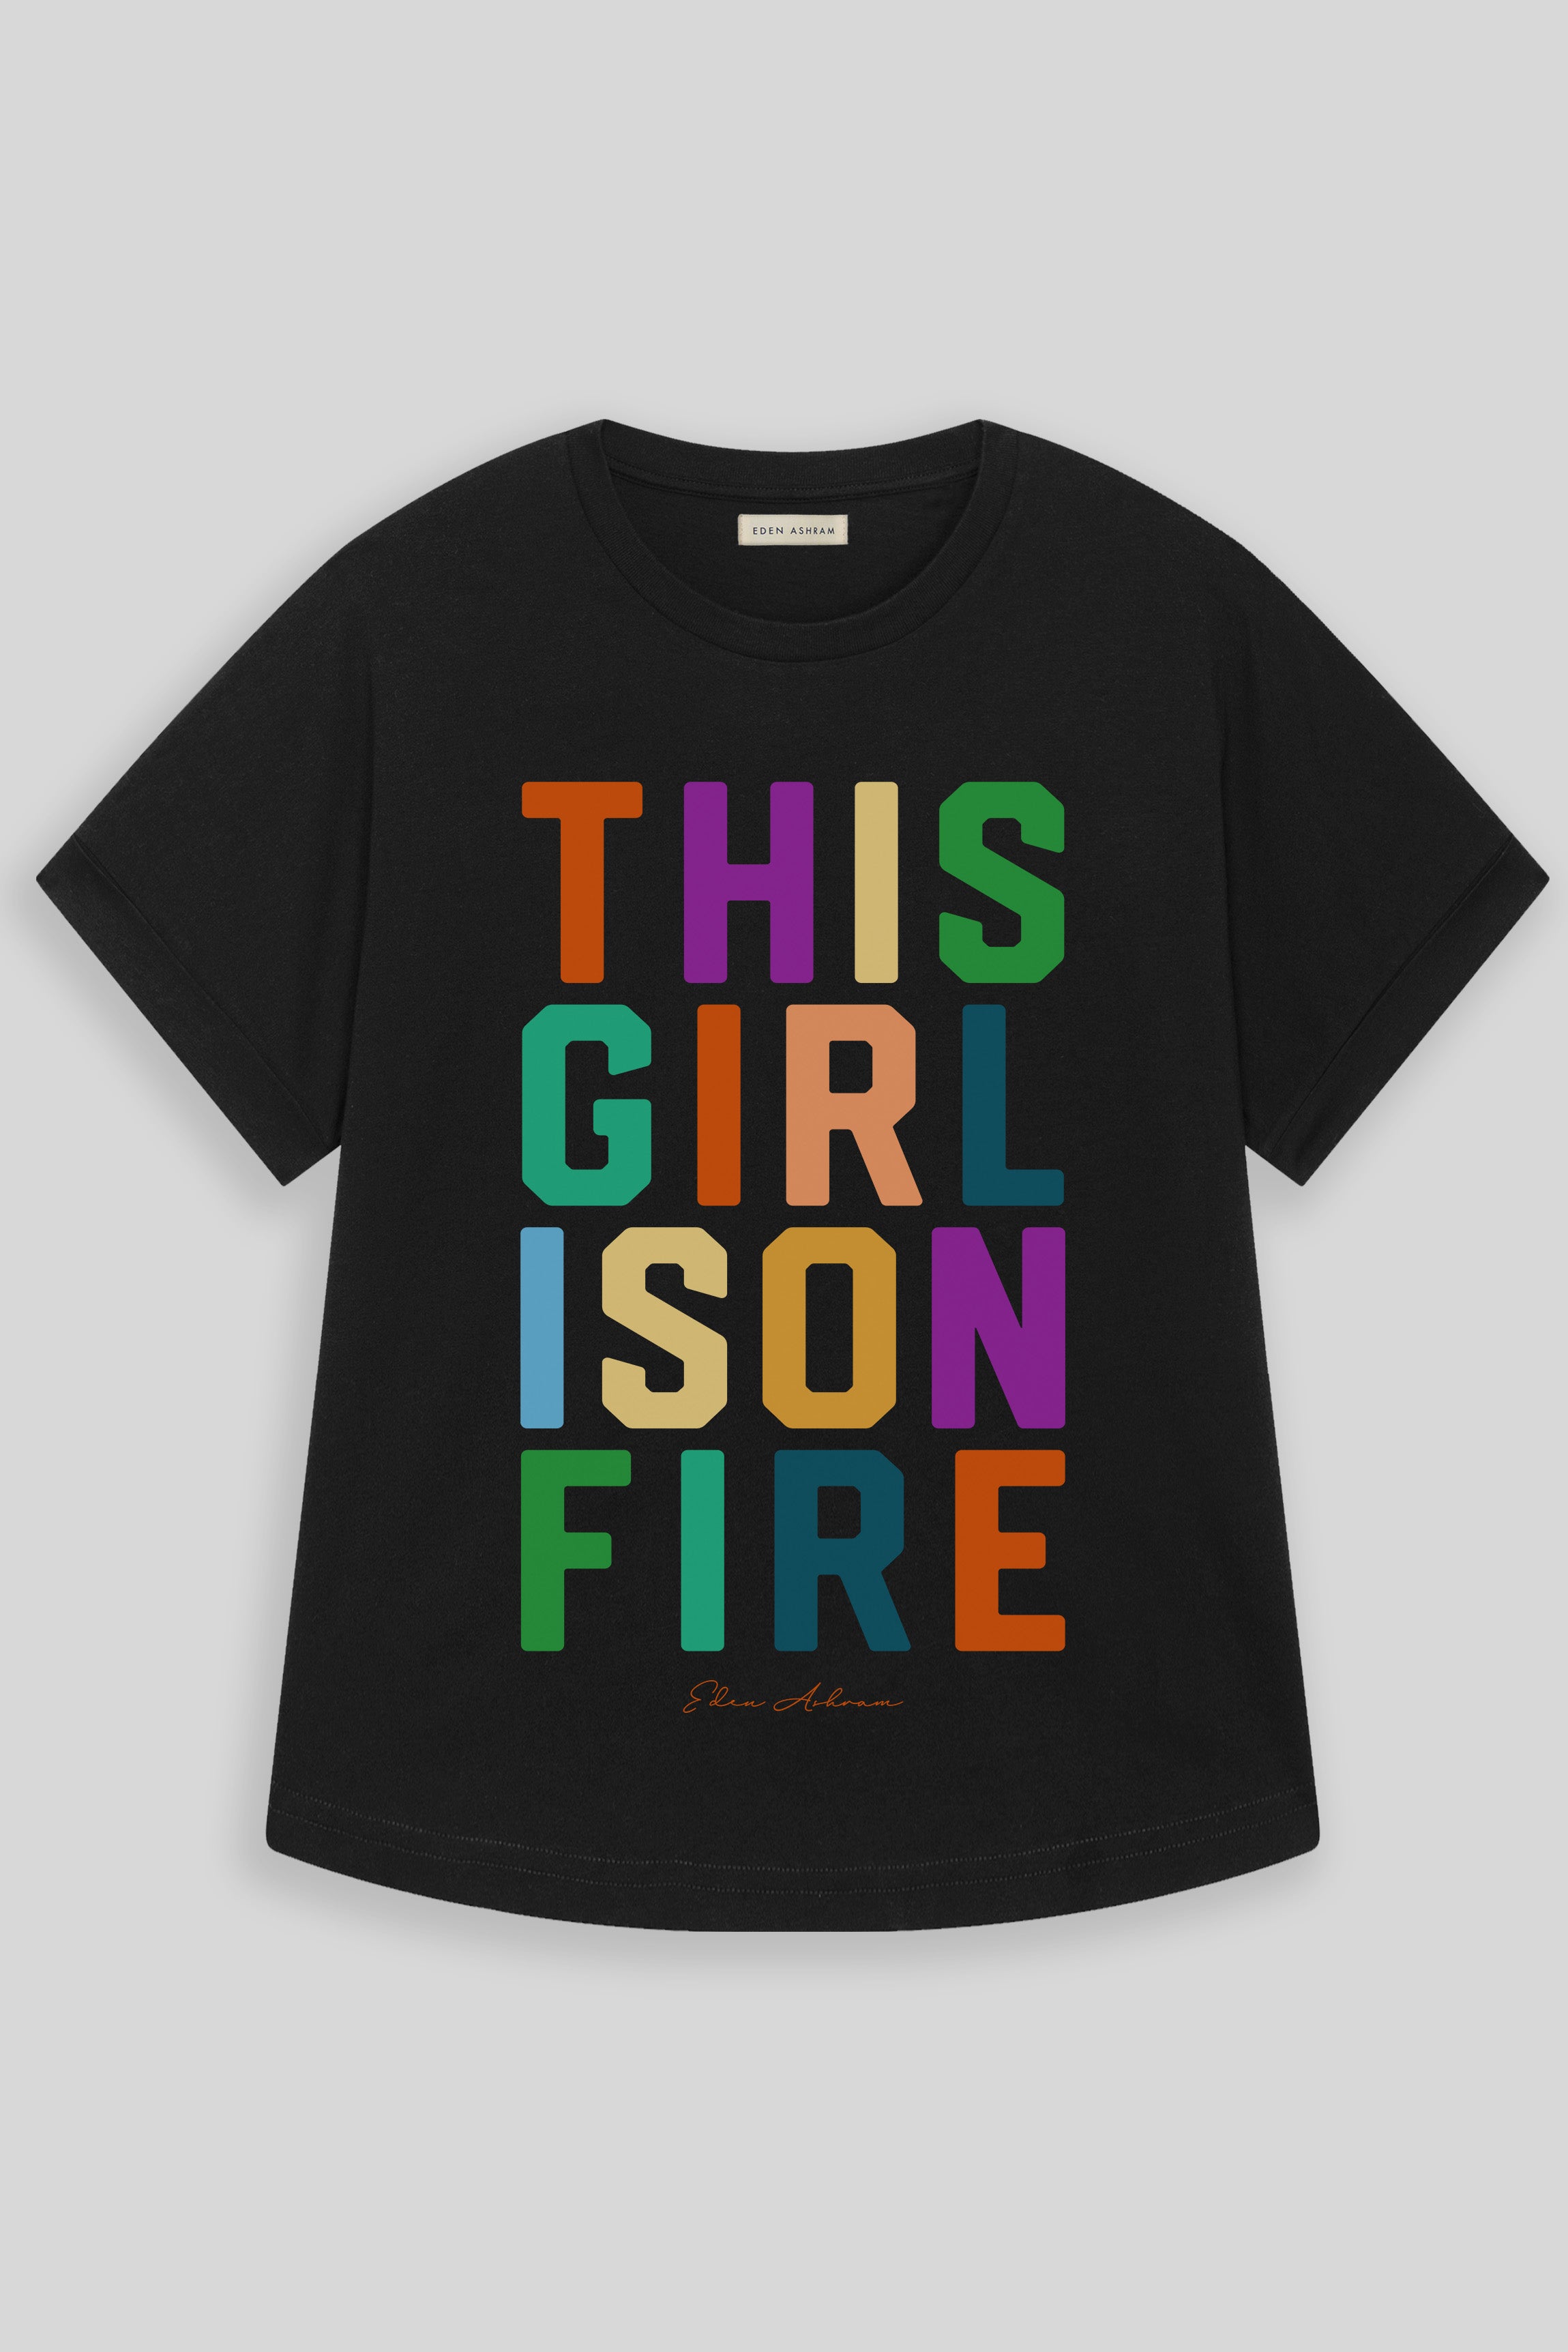 EDEN ASHRAM This Girl Is On Fire Oversized Premium Rolled Sleeve T-Shirt Black